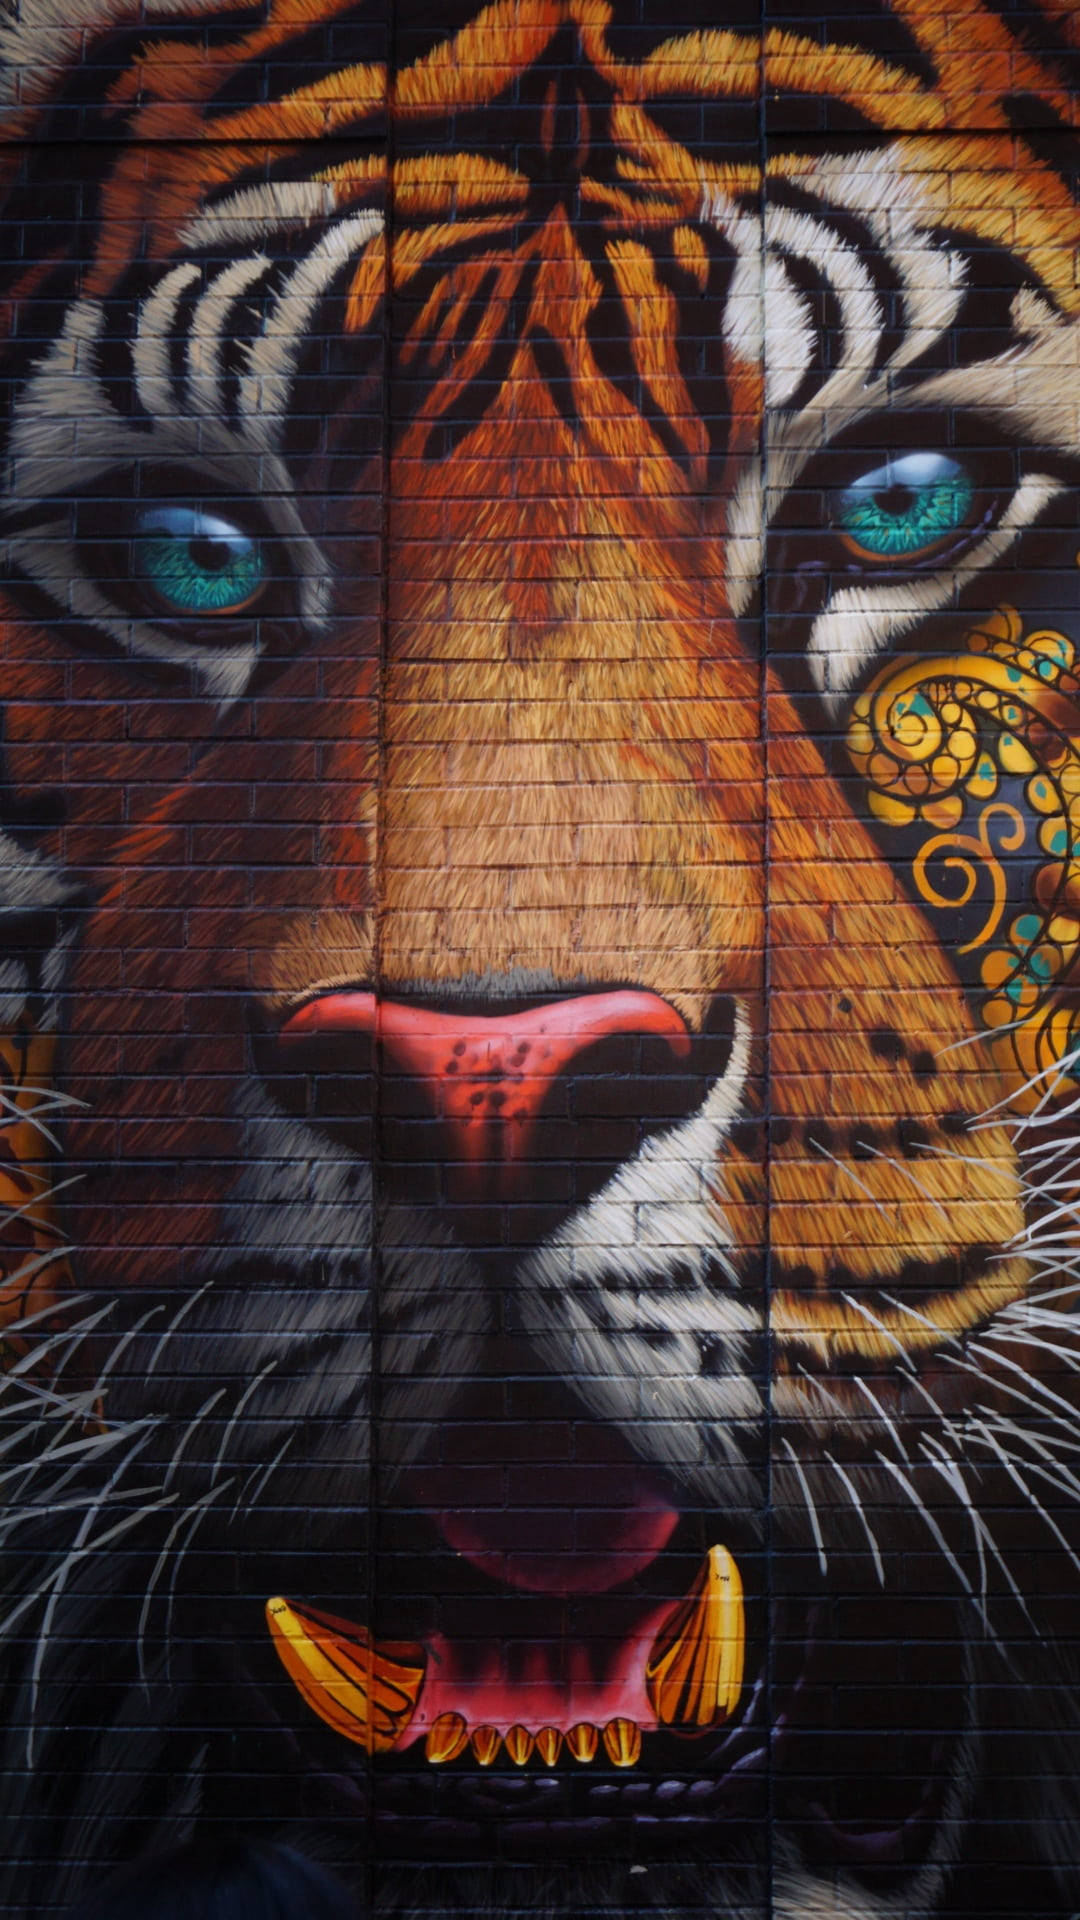 Tiger Face Wall Graffiti Iphone